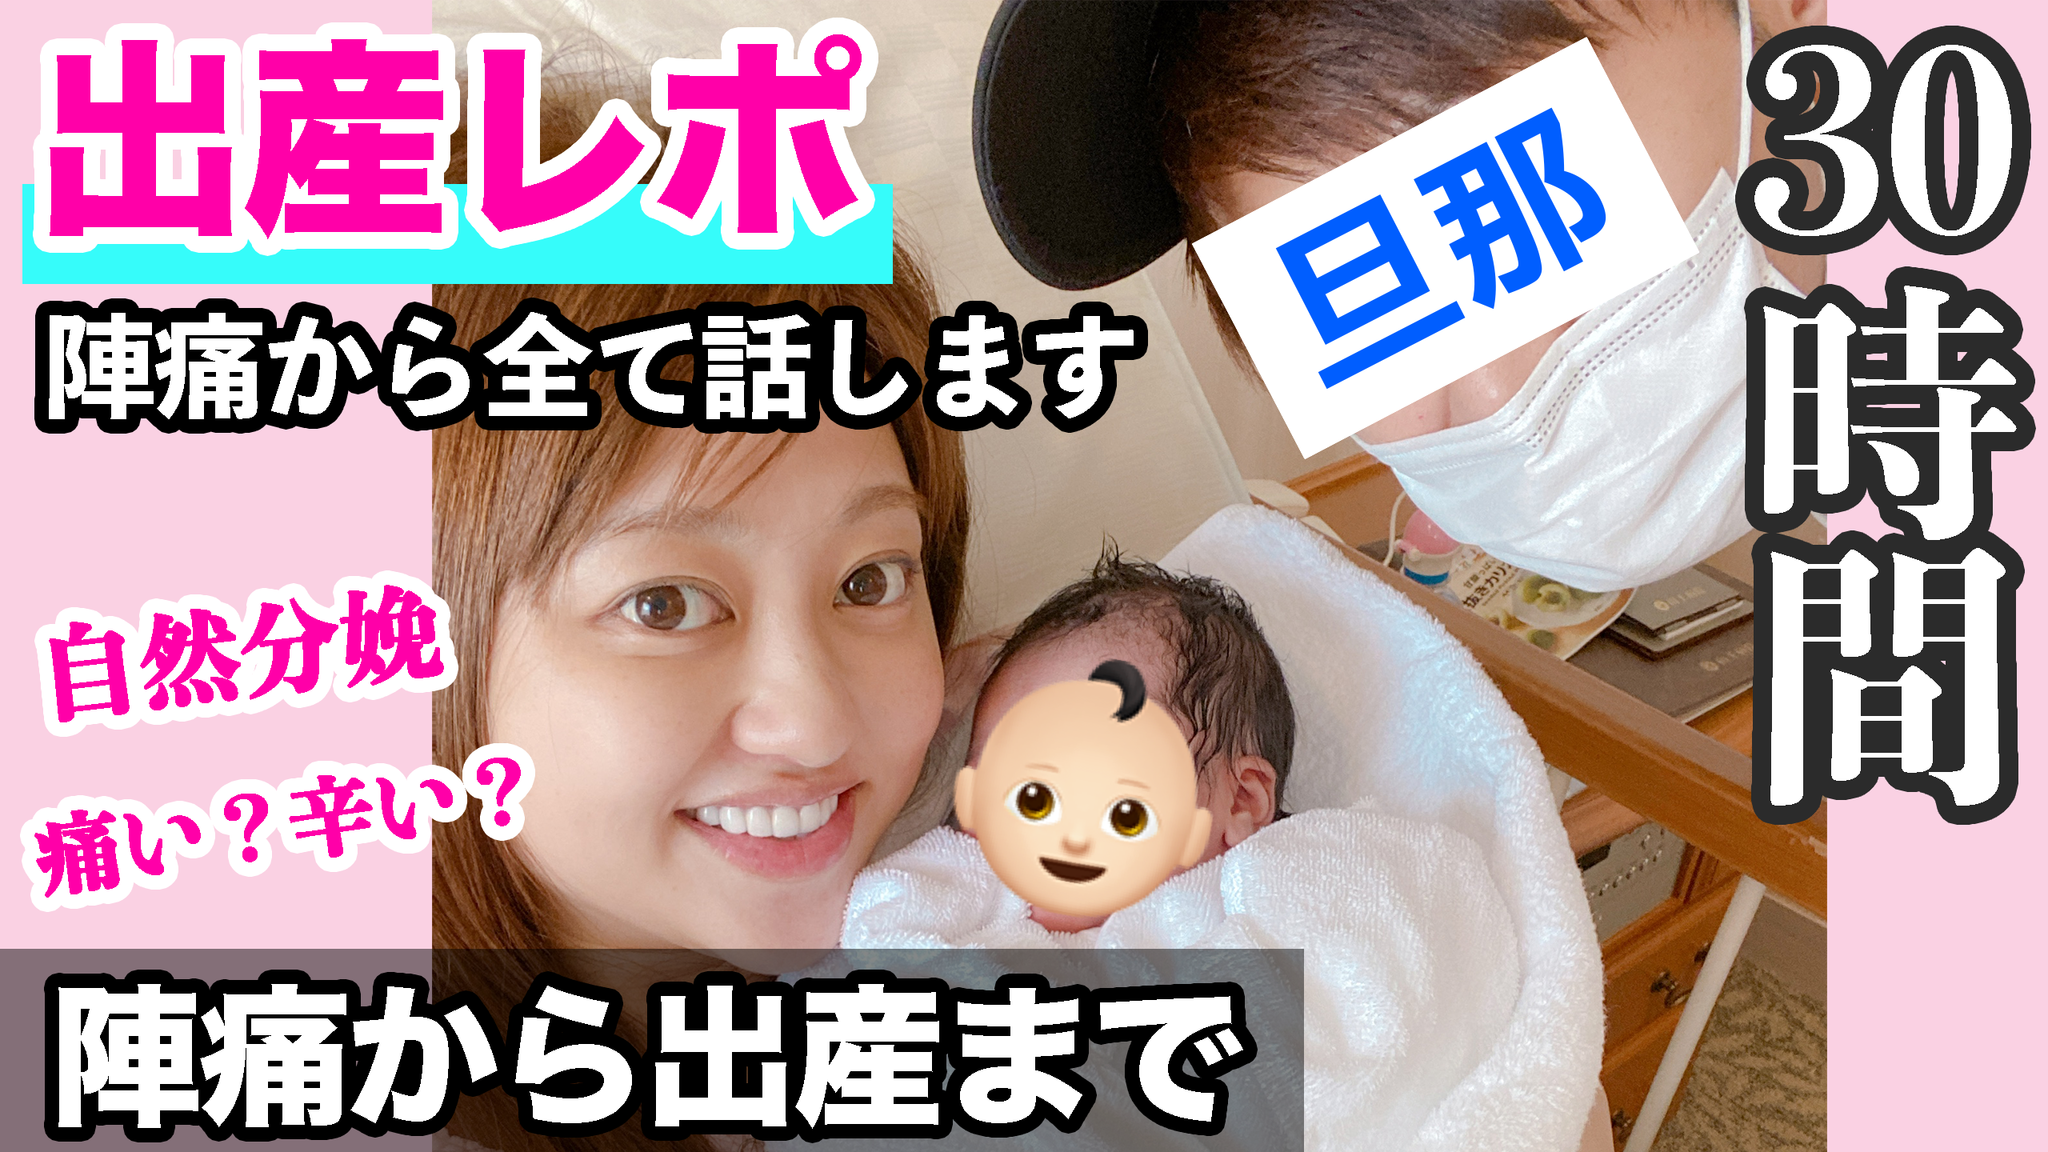 菊地亜美 30時間の出産を語る 陣痛の様子も公開 2枚目の写真 画像 Rbb Today